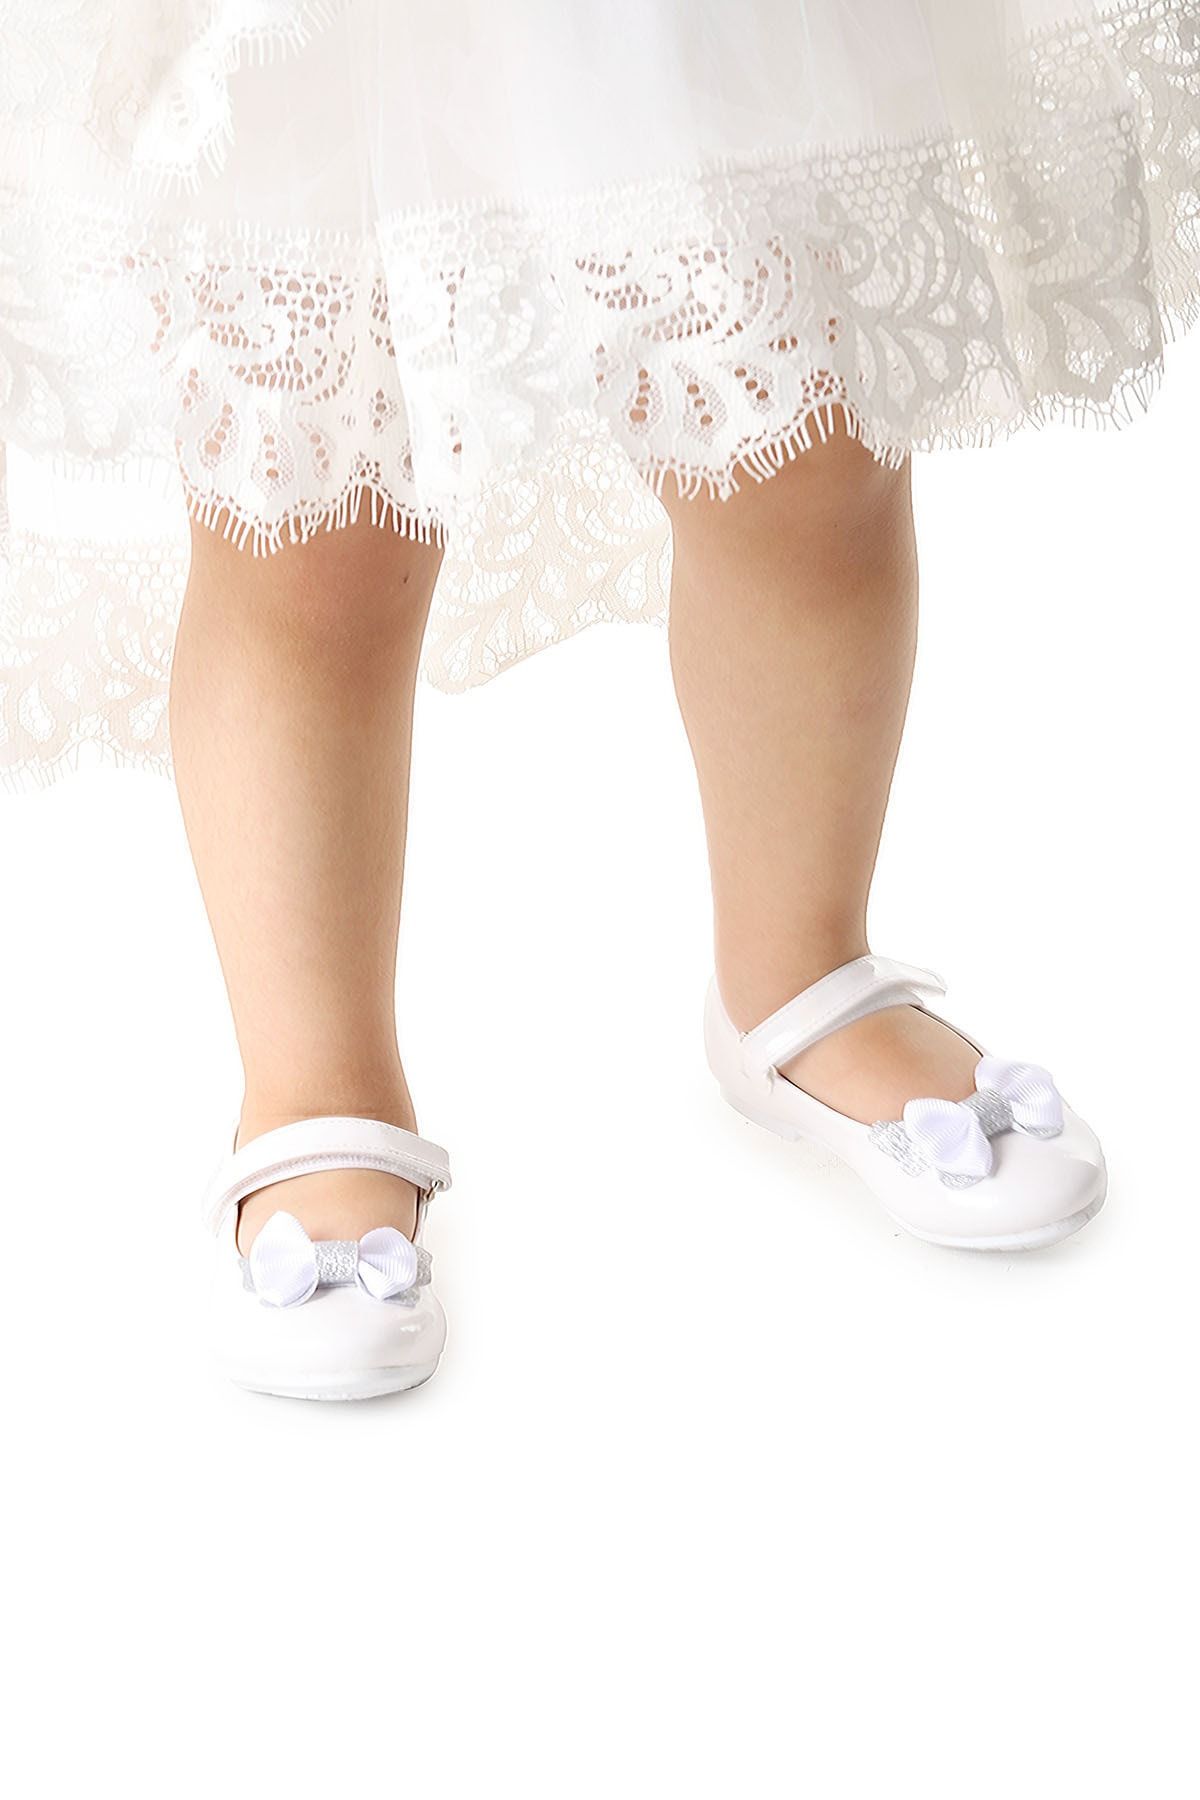 Kiko Kids Taşlı Cırtlı Kız Çocuk Fiyonklu Babet Ayakkabı Ege 204 Rugan